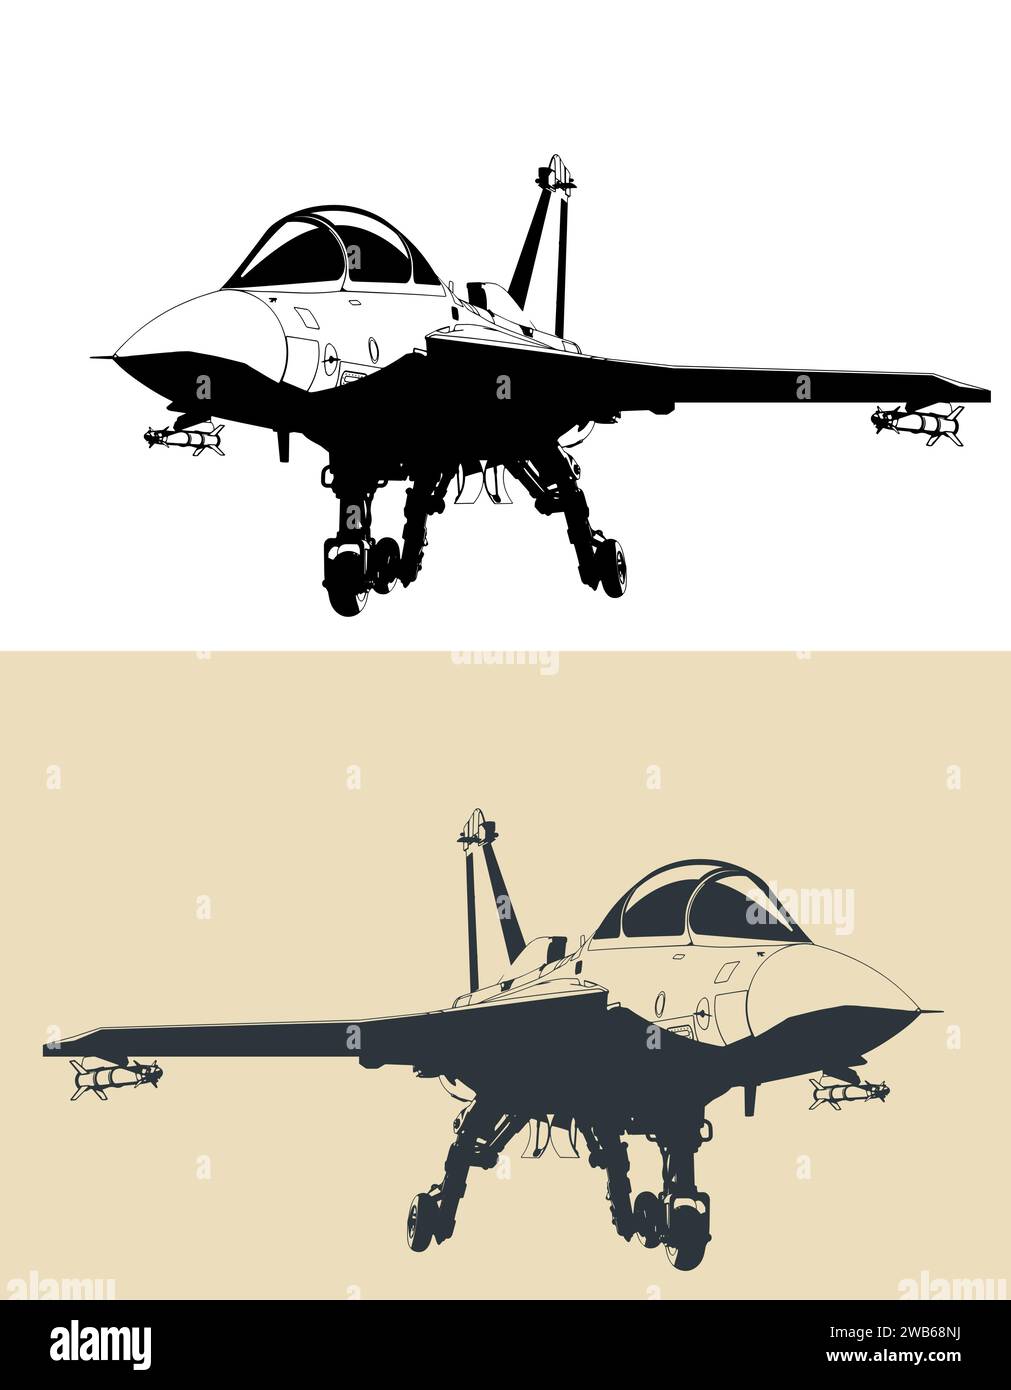 Stilisierte Zeichnung eines modernen Militärjets auf Basis eines leichten Trägers Stock Vektor